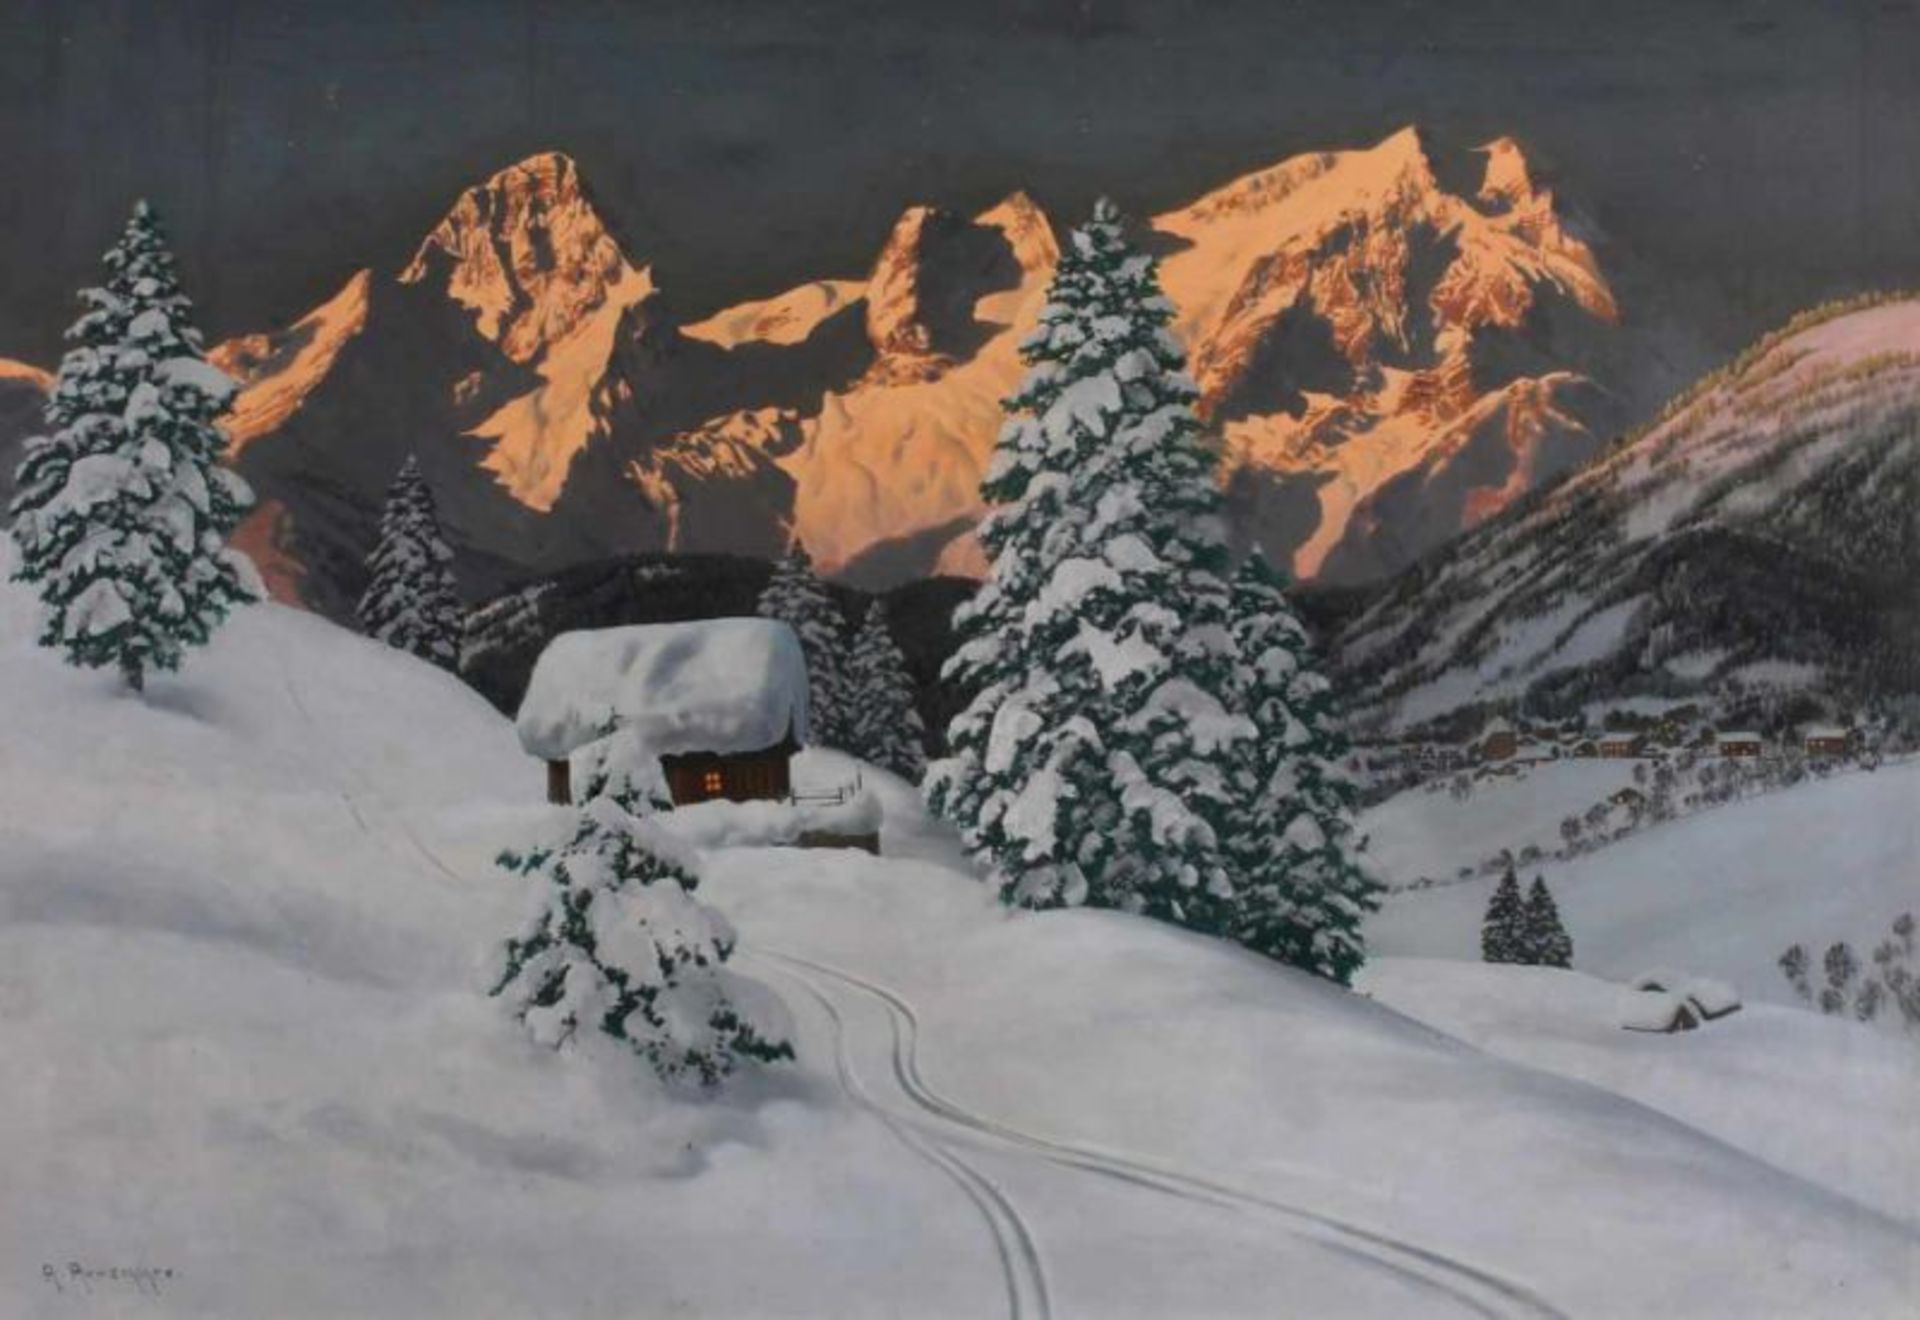 Arnegger, Alois (1879 Wien - 1963 ebda., Landschaftsmaler), "Dorf in winterlicher